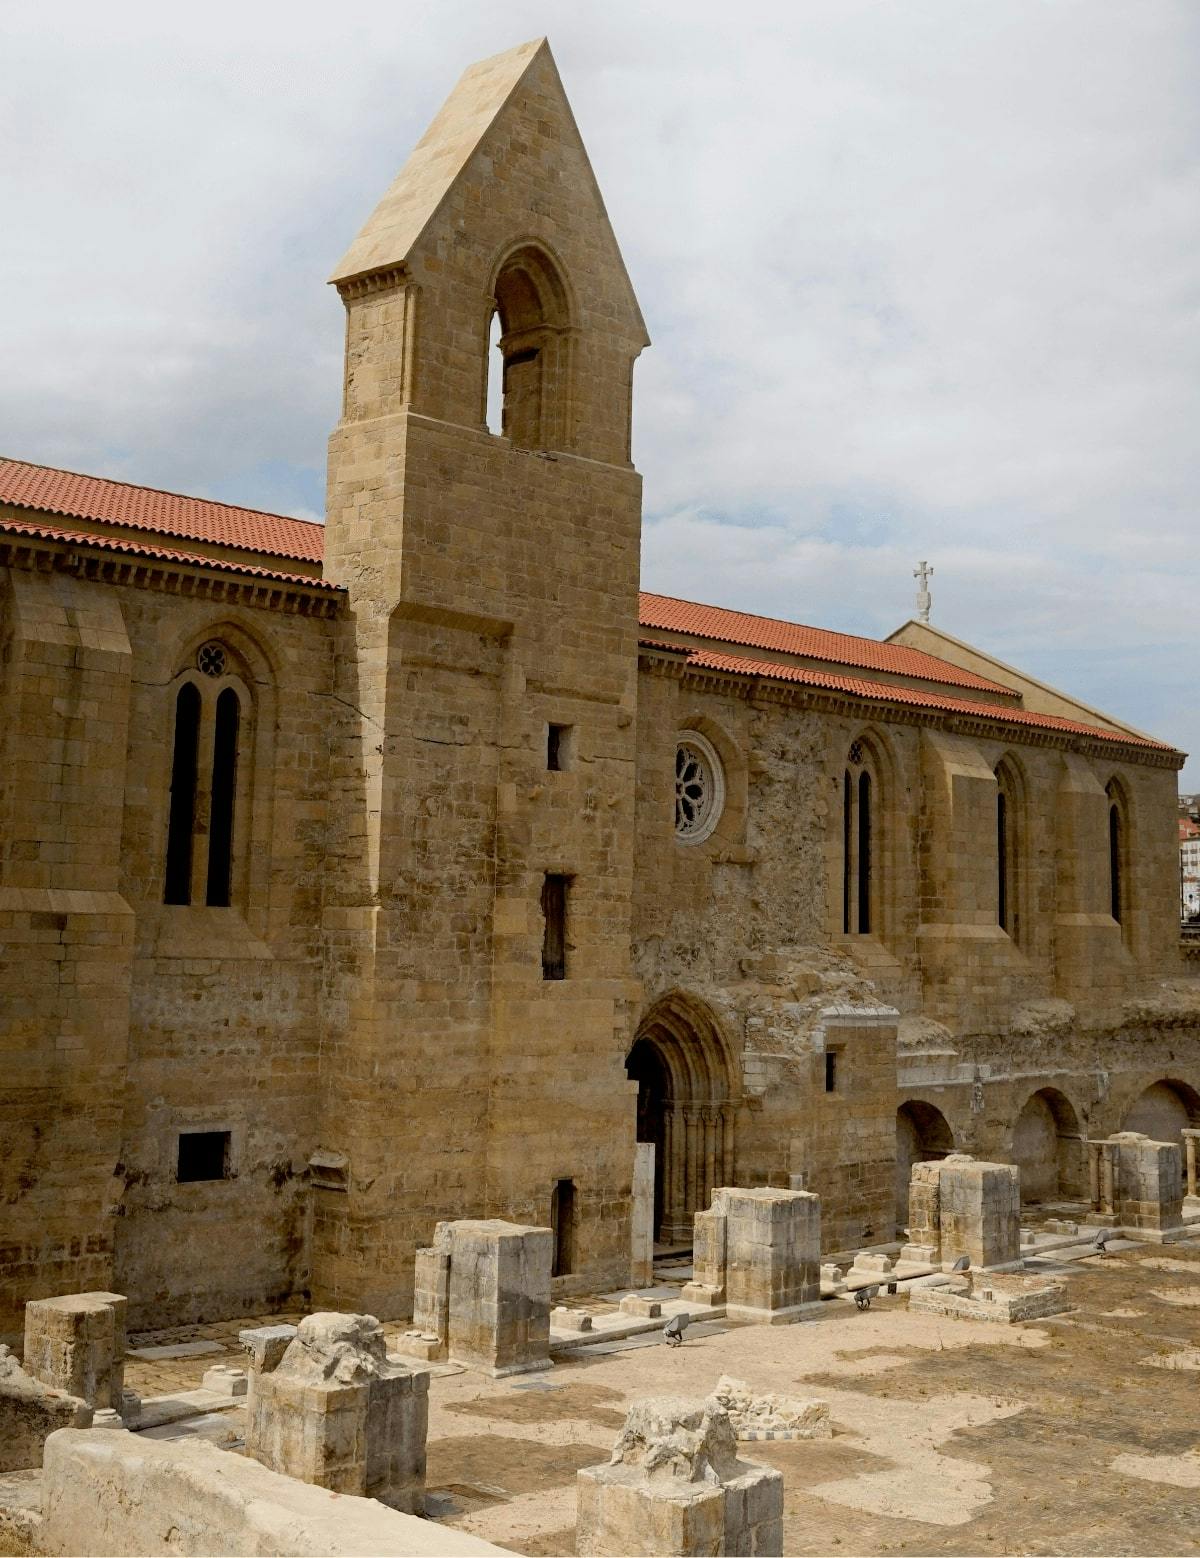 The Monastery of Santa Clara-a-Velha